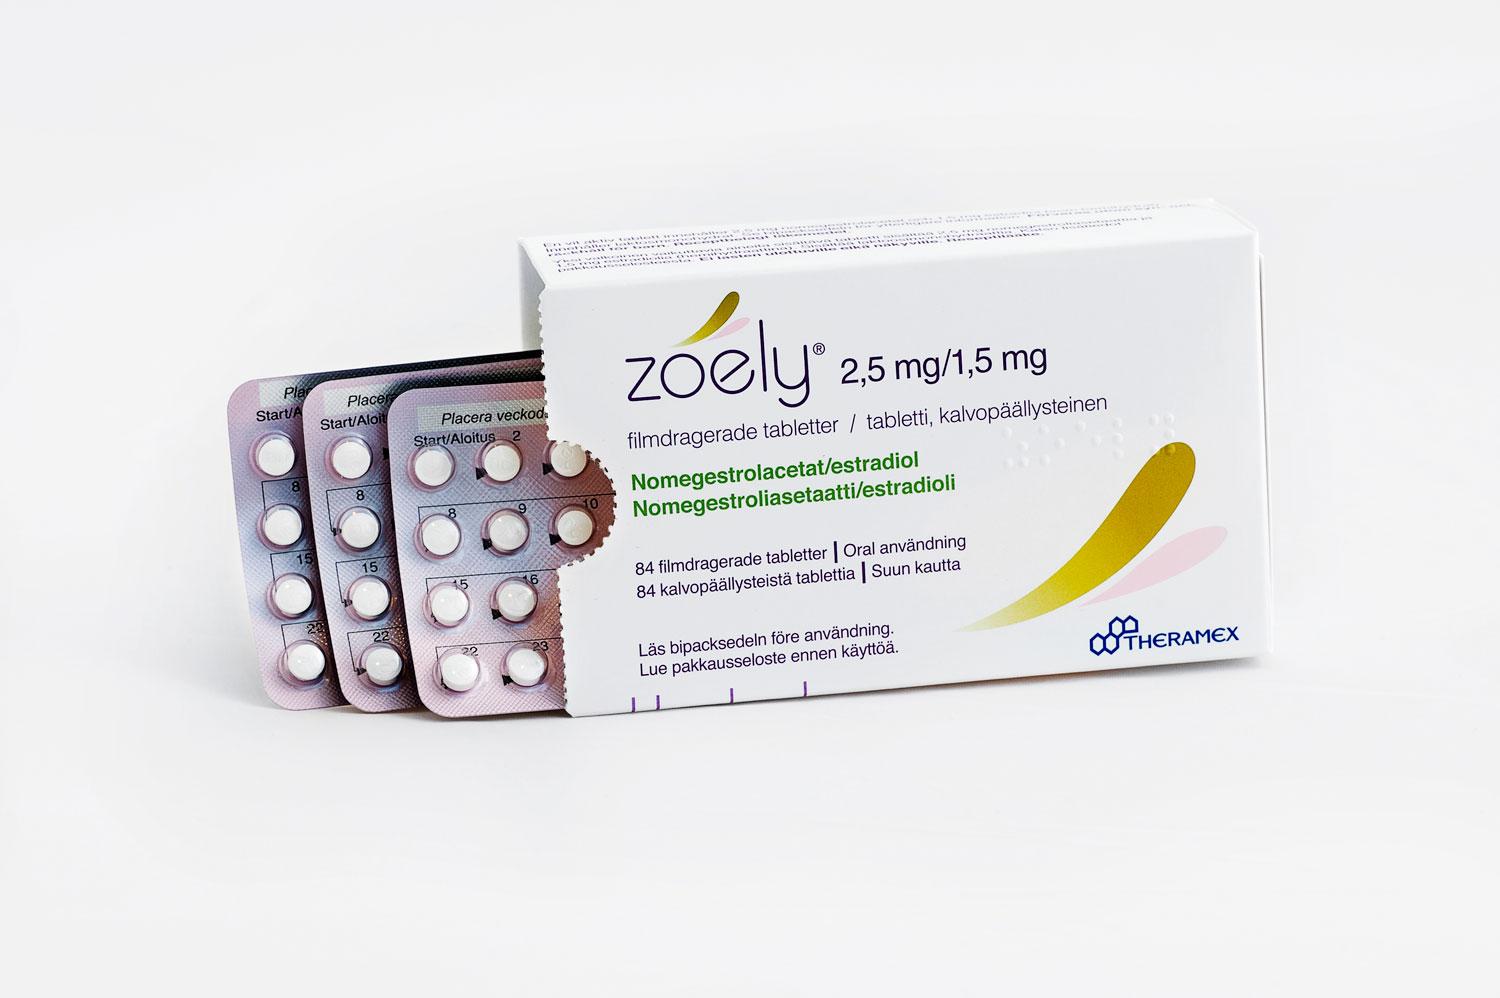 P-pillret Zoely är slut på apoteken på grund av problem med tillverkningen.